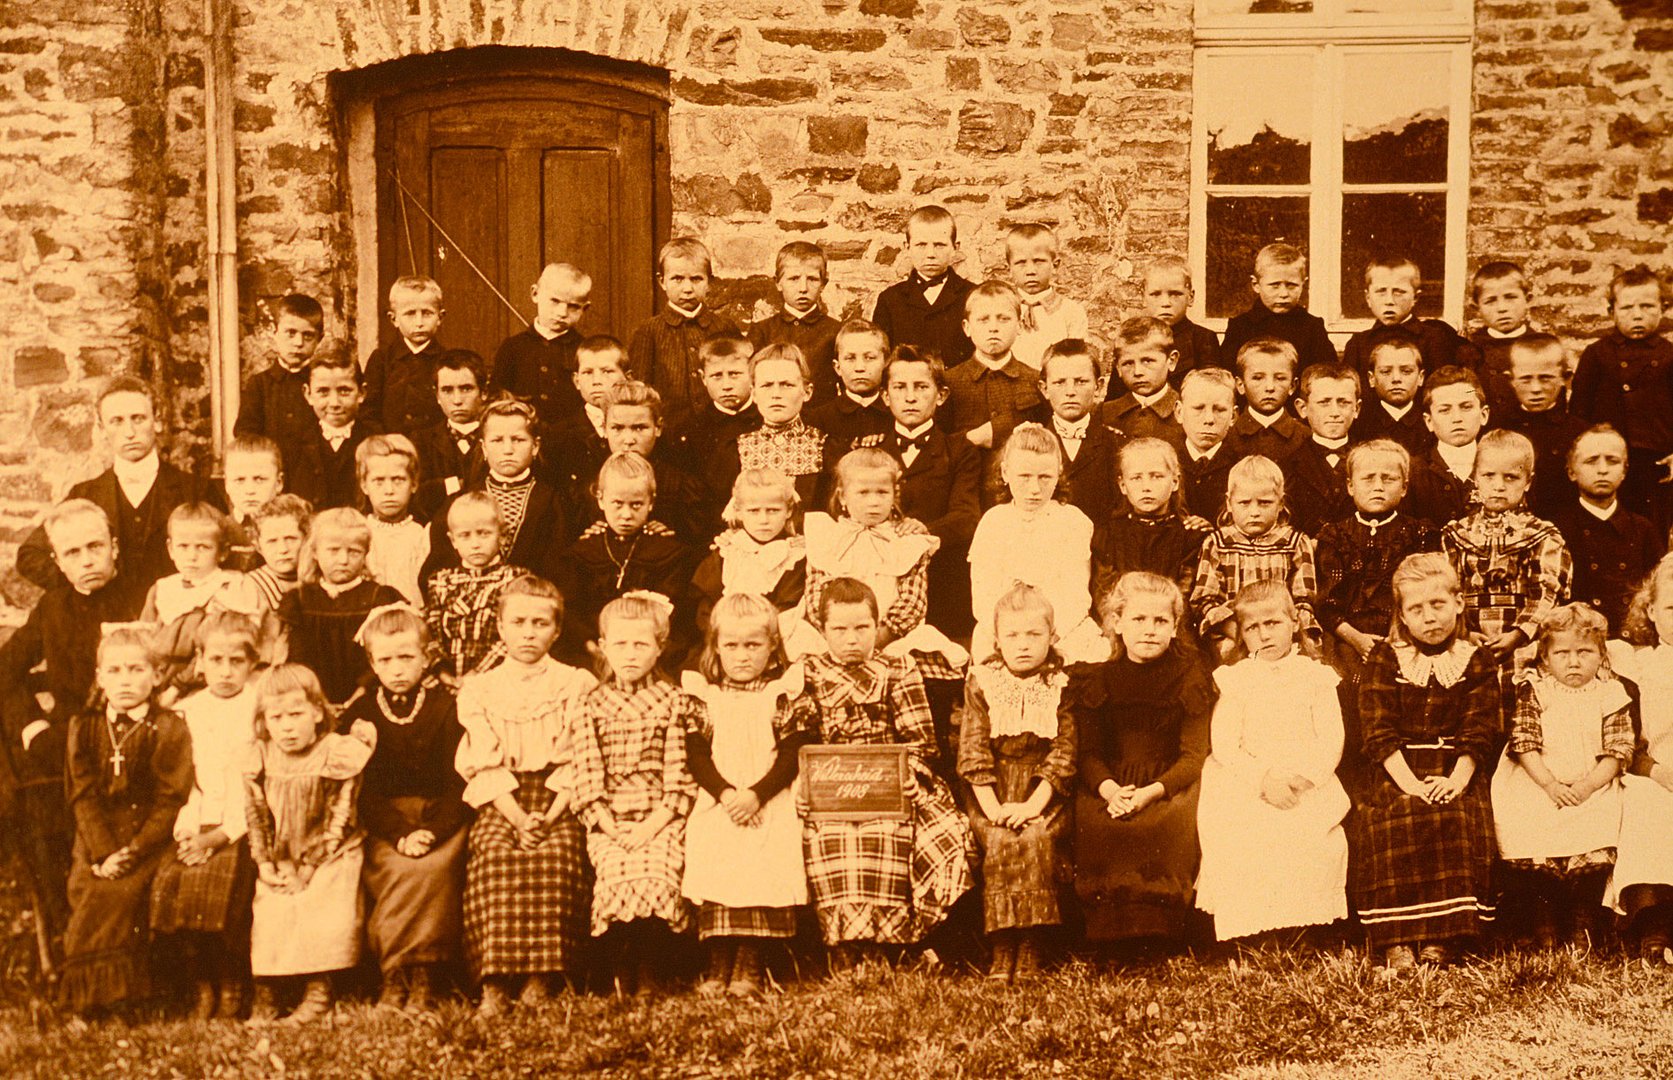 1908. Klassenbild eine Dorfschule in der Eifel